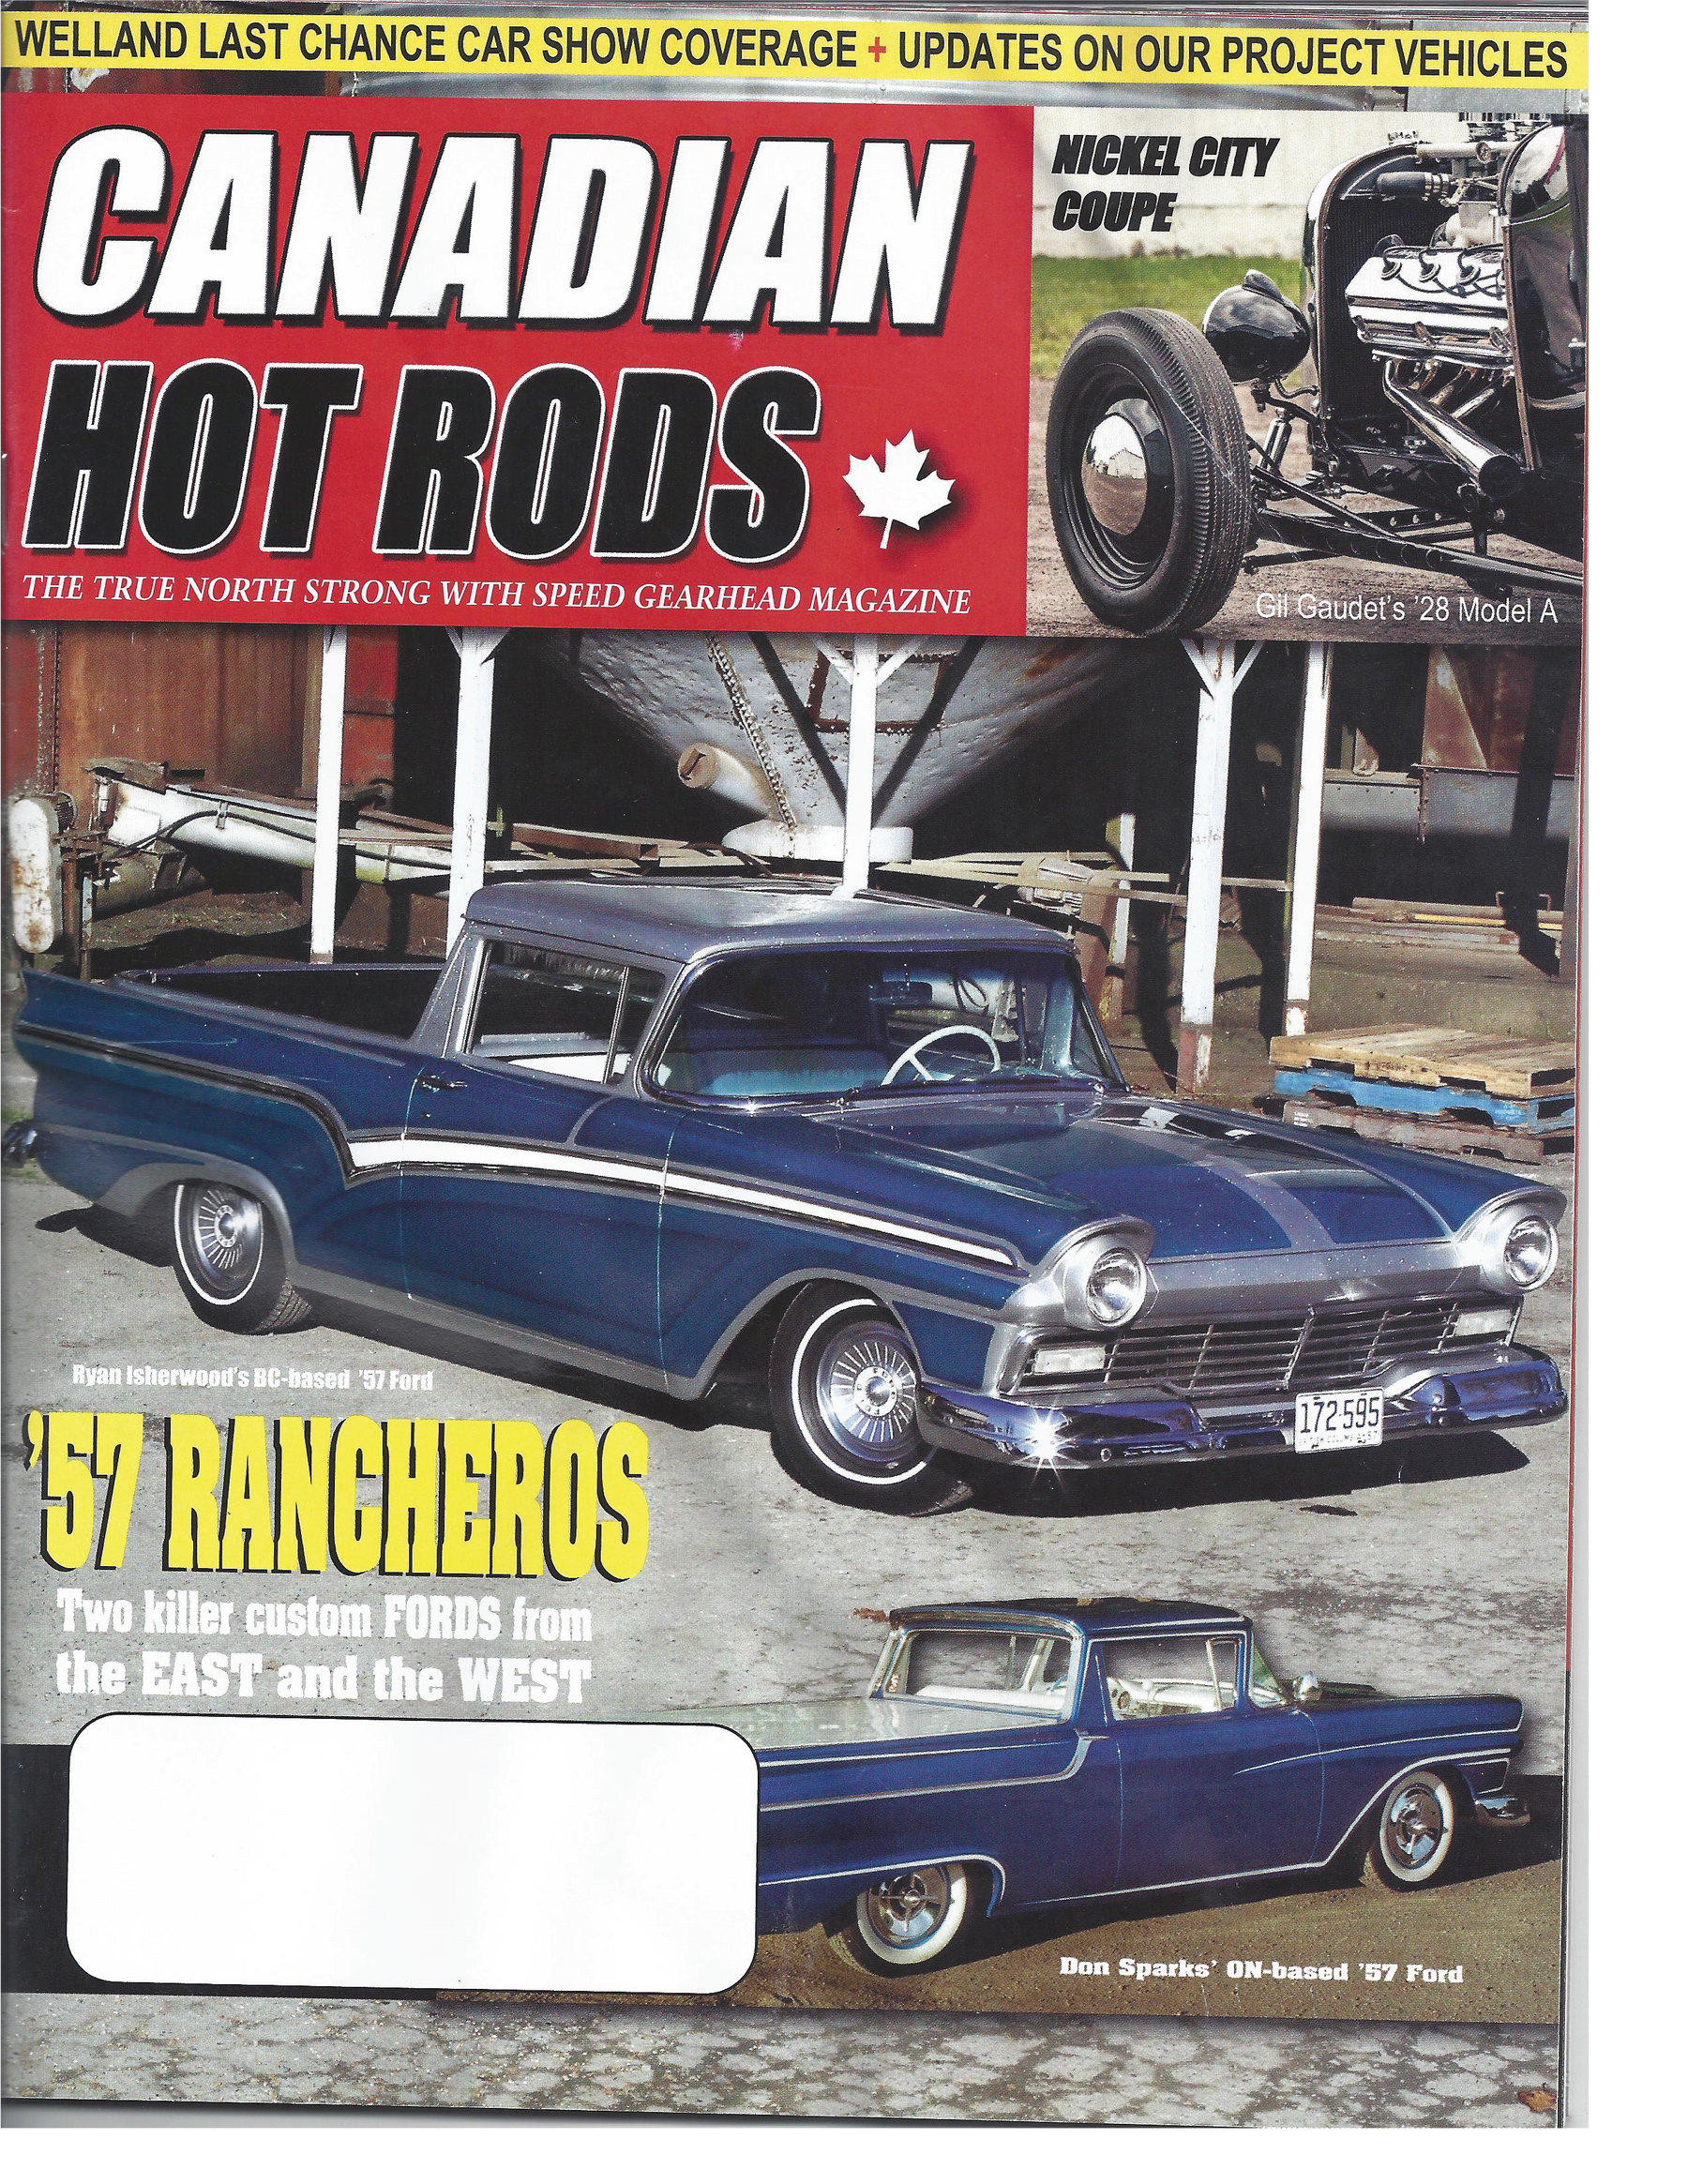 Canadian Hot Rods V14, Issue 13: Stroker FE